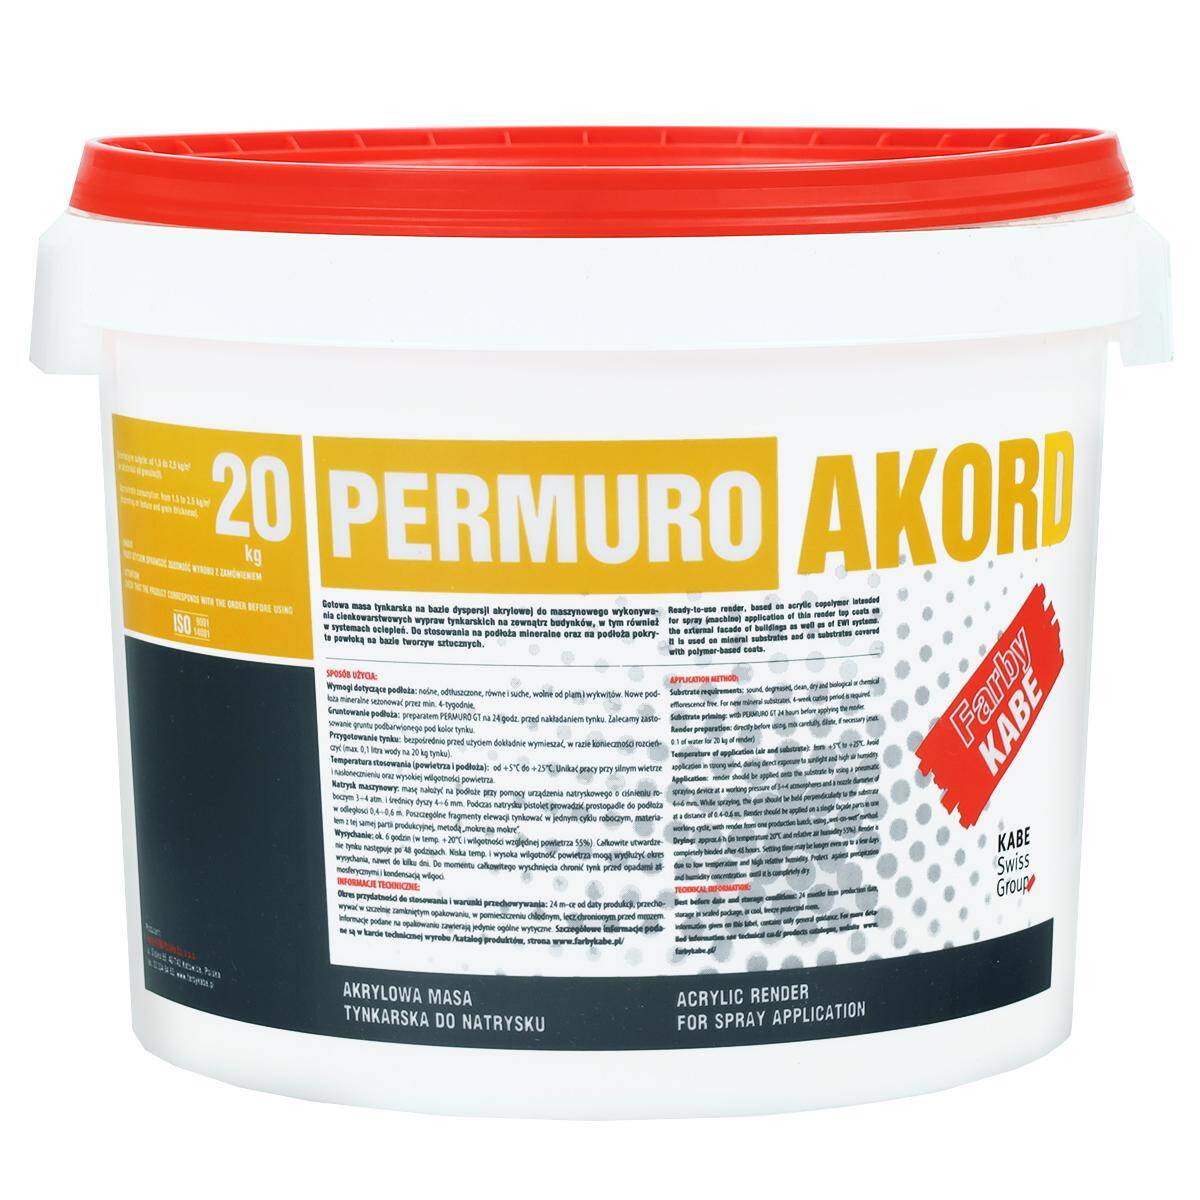 Tynk akrylowy do natrysku maszynowego 1,5 mm Kabe Permuro Akord 20 kg K11790